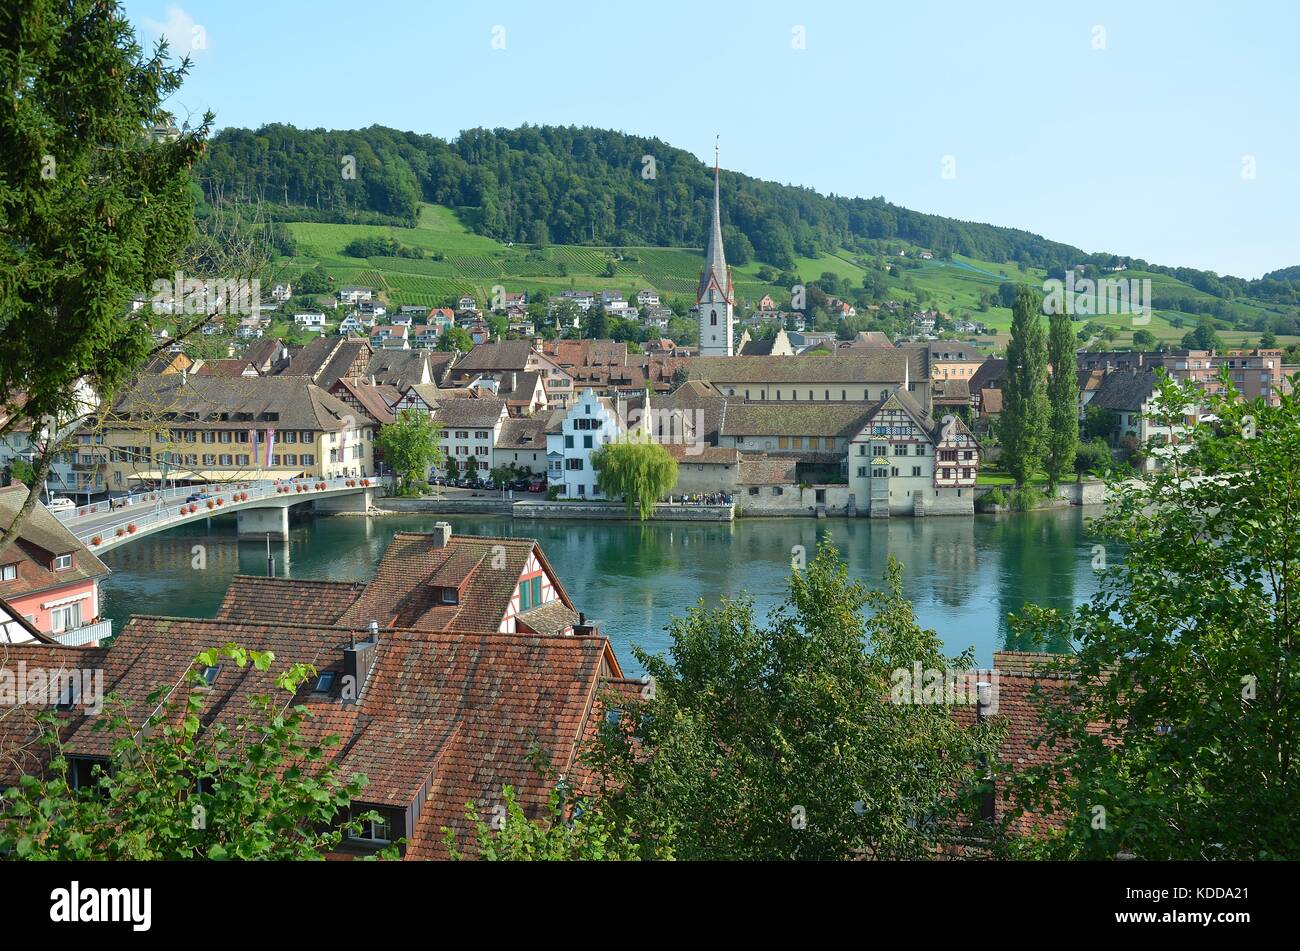 View of the historical town of Stein am Rhein, Switzerland Stock Photo